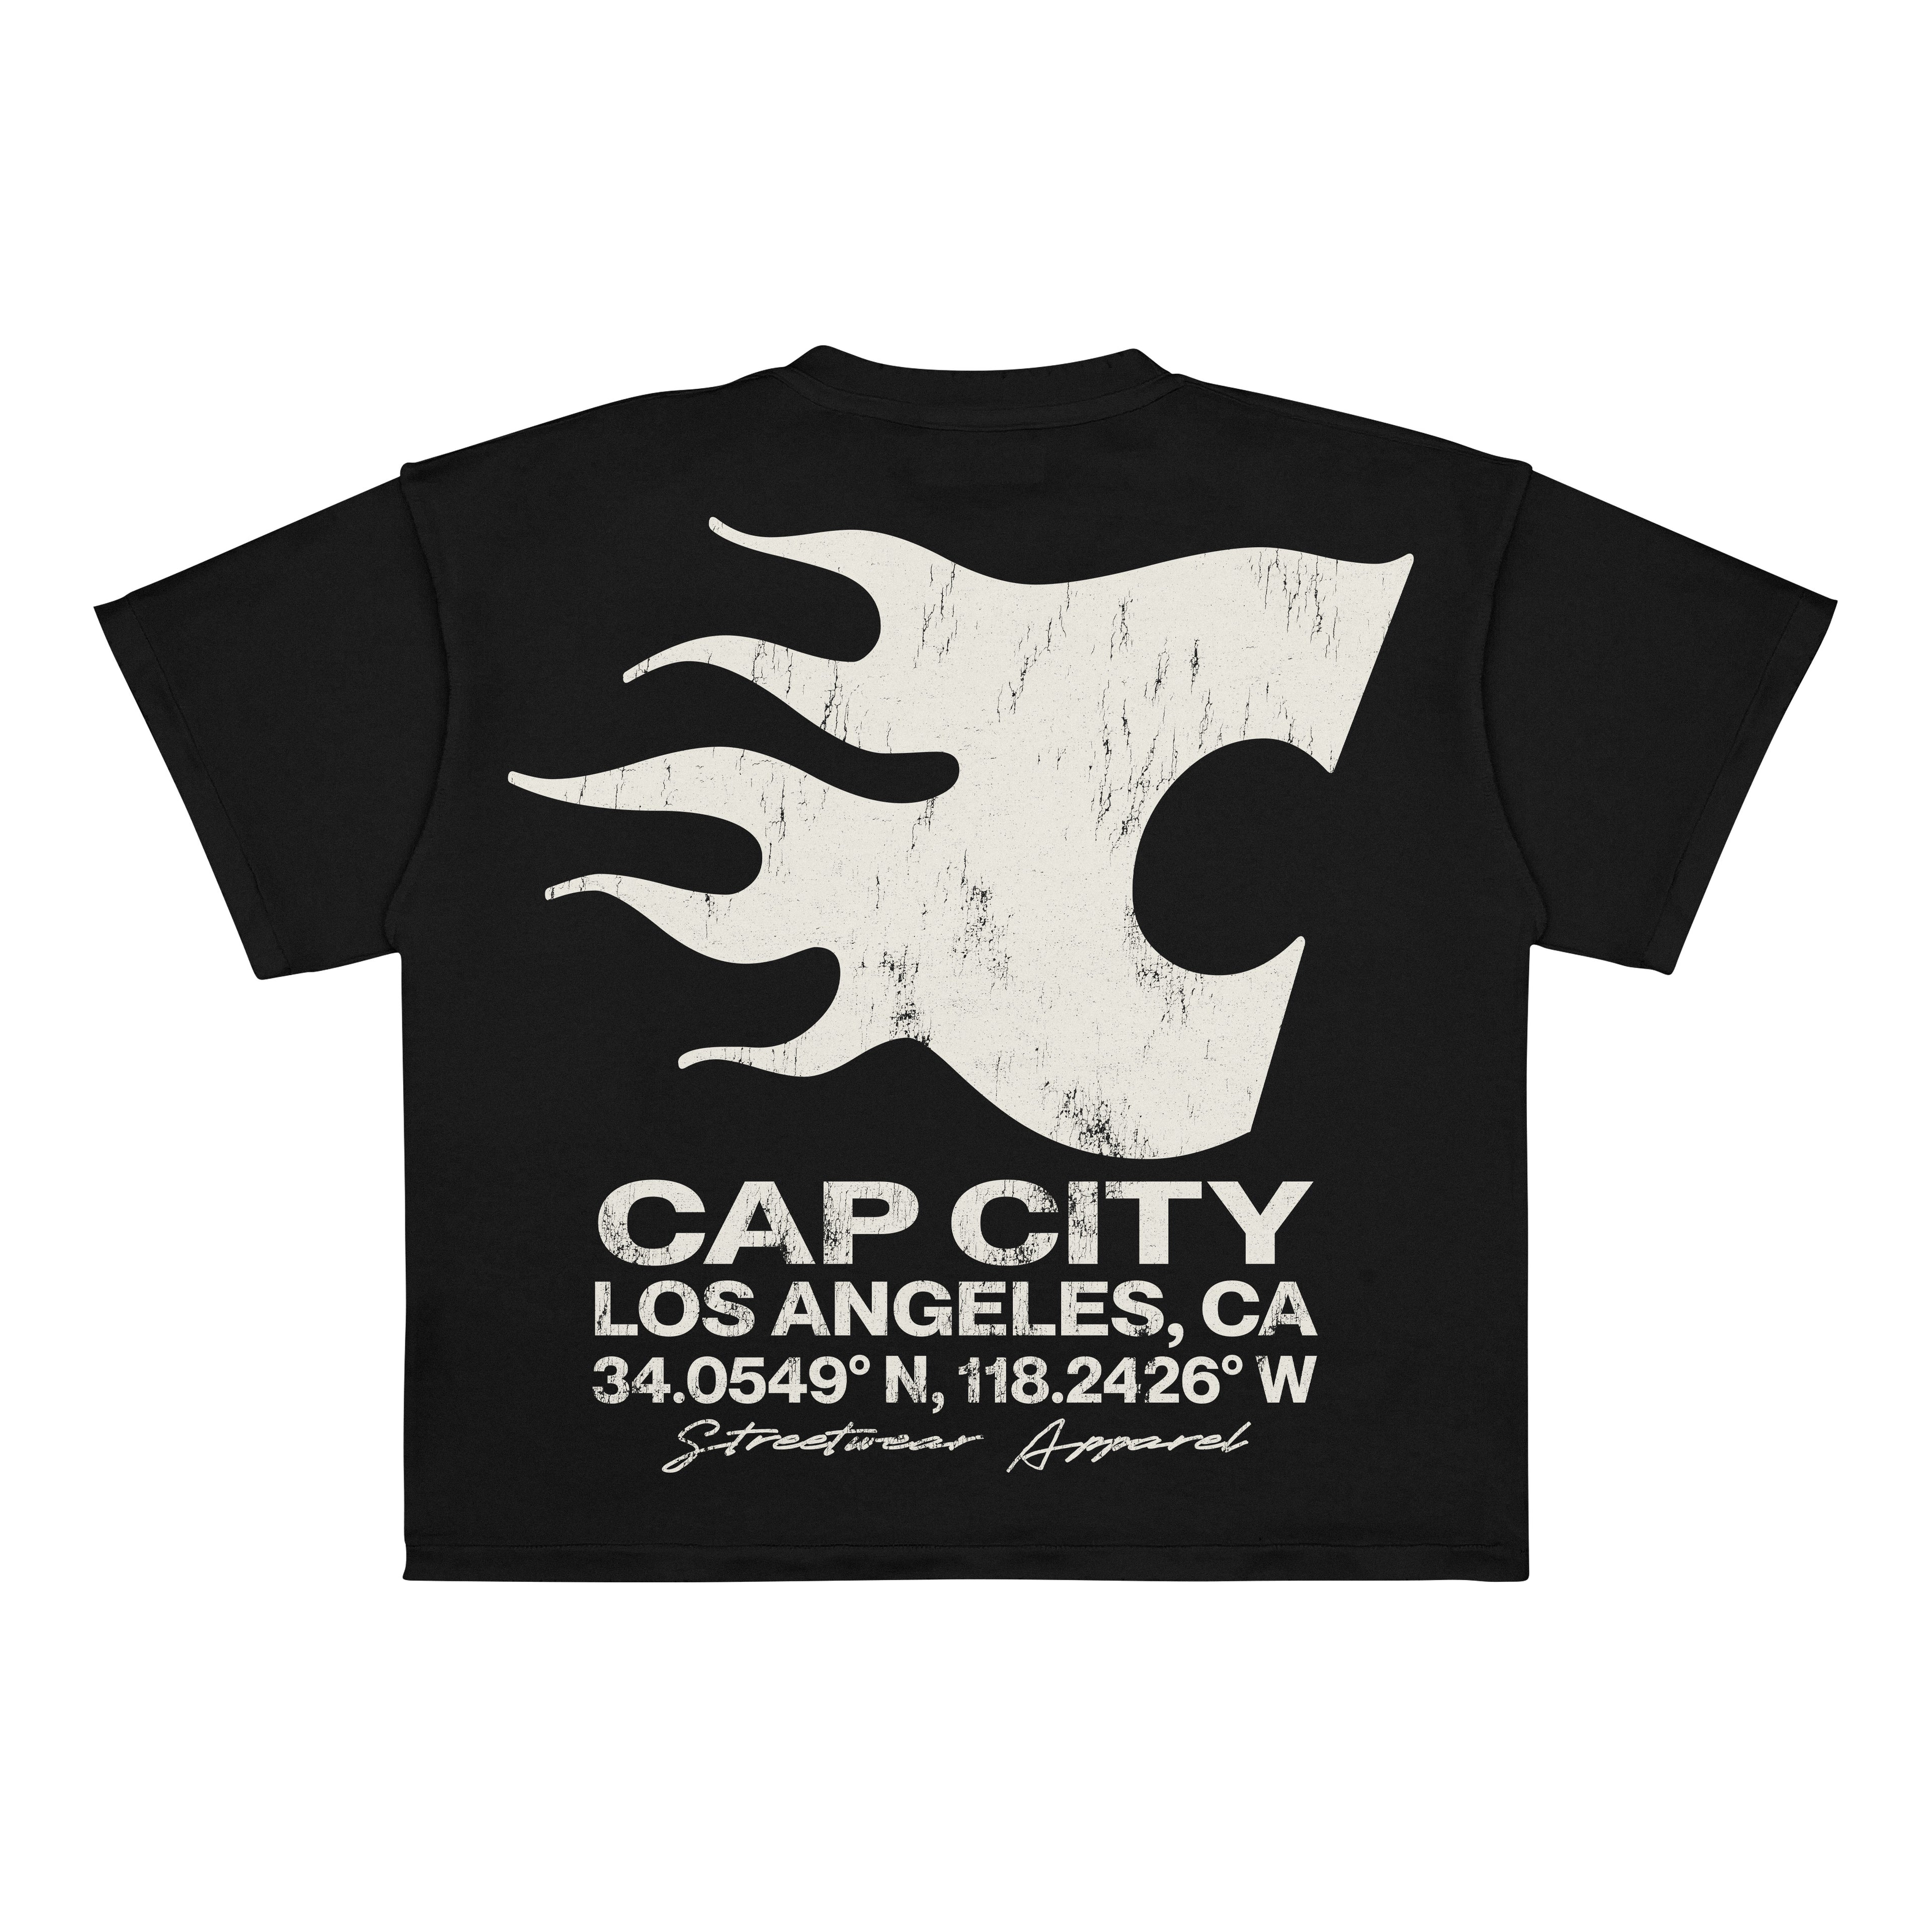 EXCLUSIVE CLUB BLACK “CAP CITY” OVERSIZED TEE